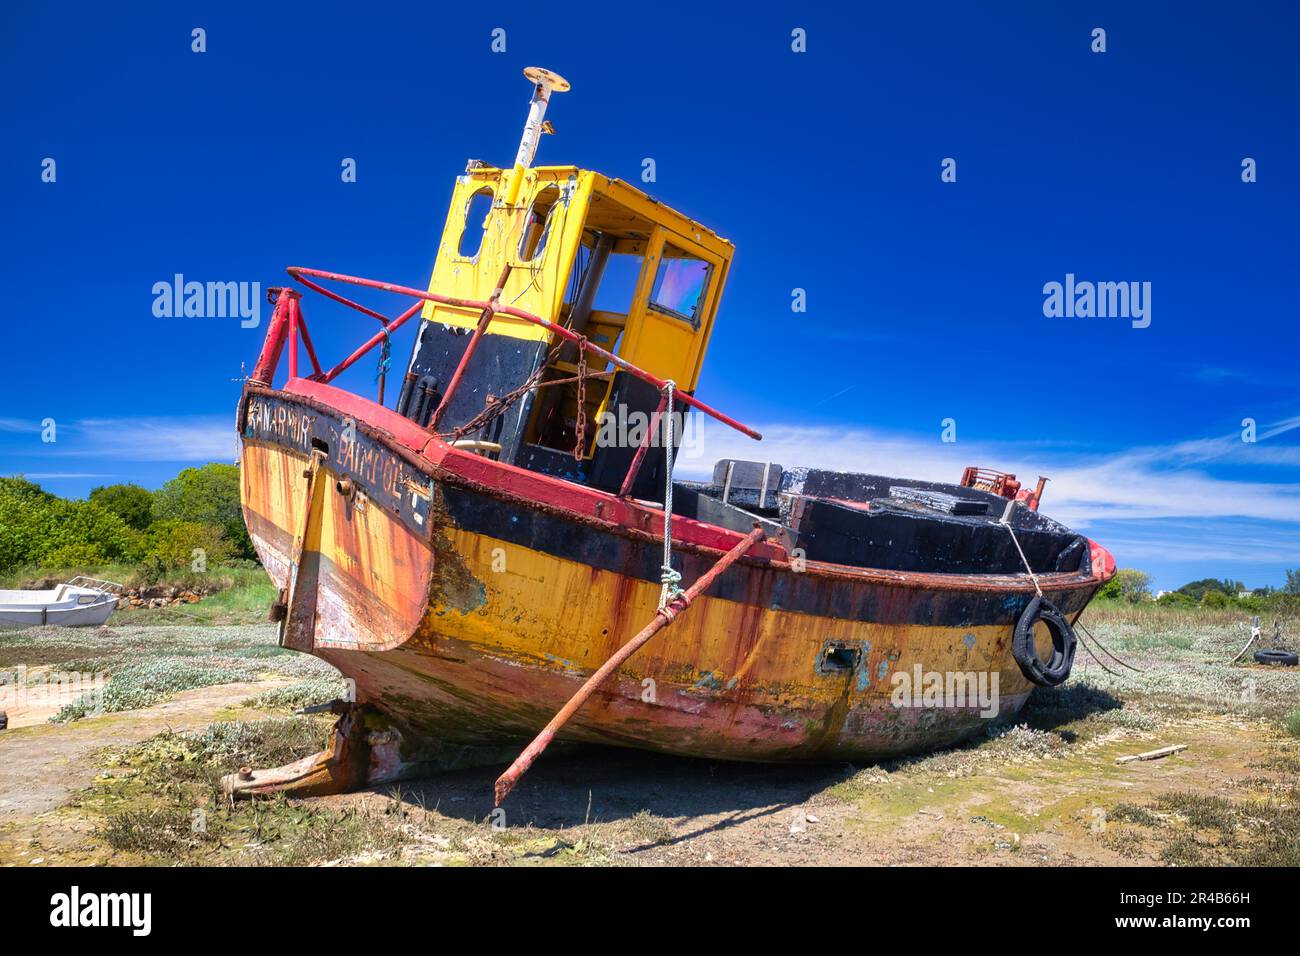 Vieux bateau de pêche, mis au rebut sur la côte près de Paimpol, département des Côtes-d'Armor, Bretagne, France Banque D'Images